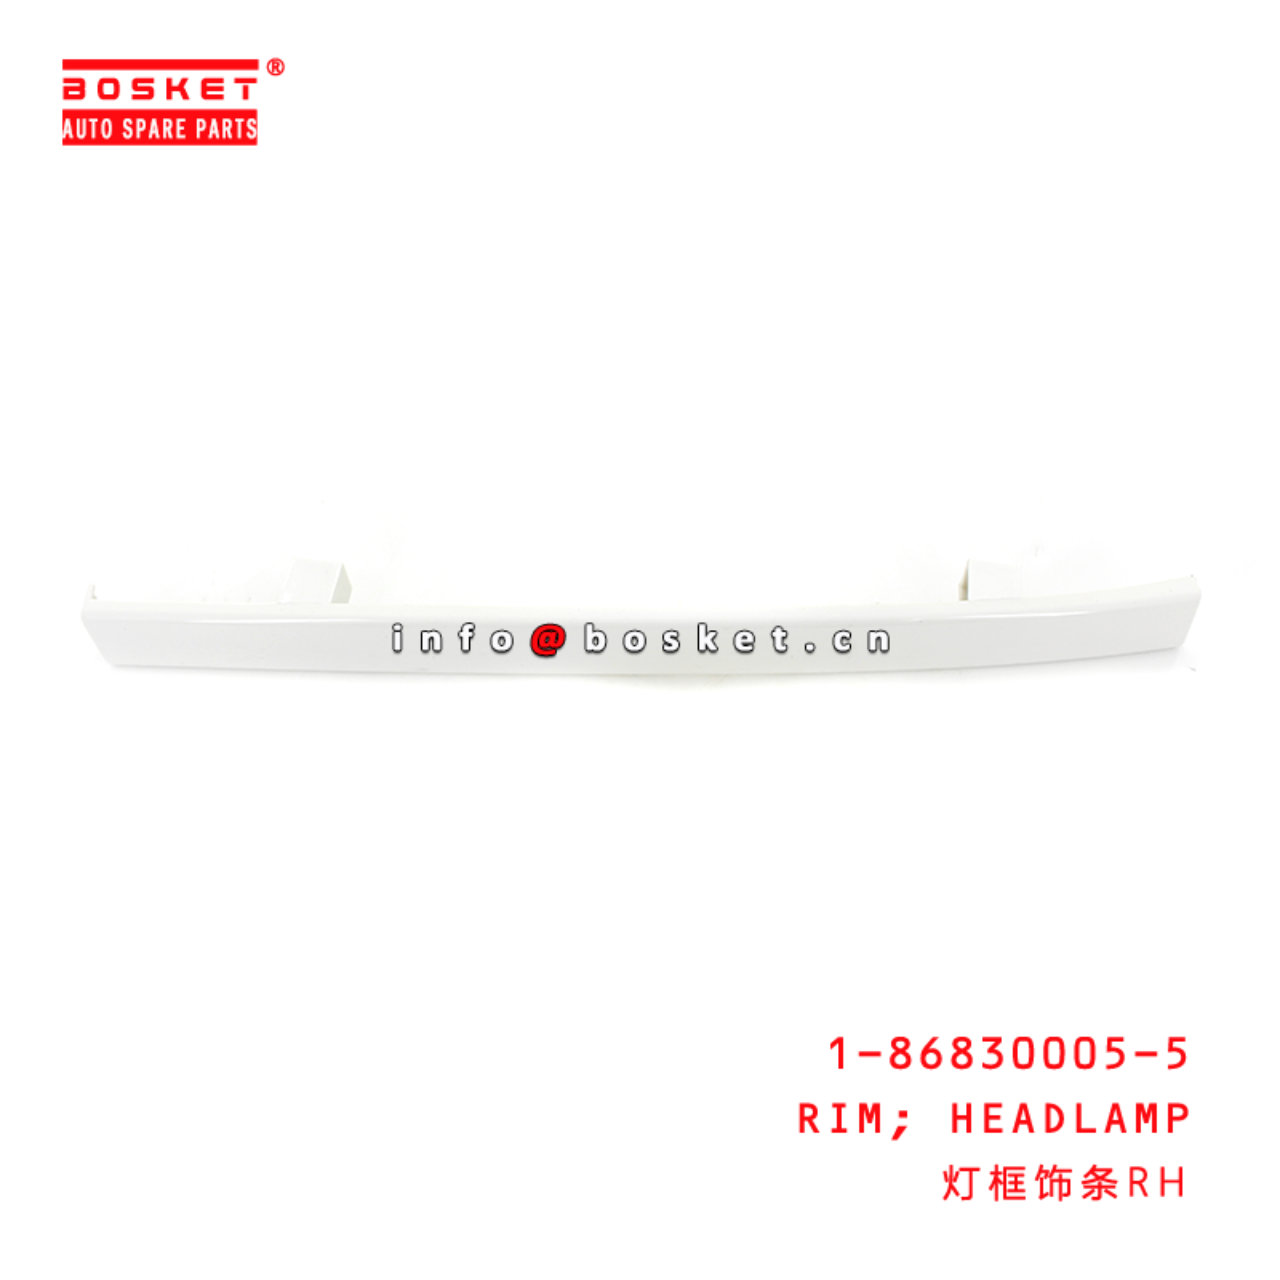 1-86830005-5 Headlamp Rim Suitable for ISUZU FVR34 1868300055